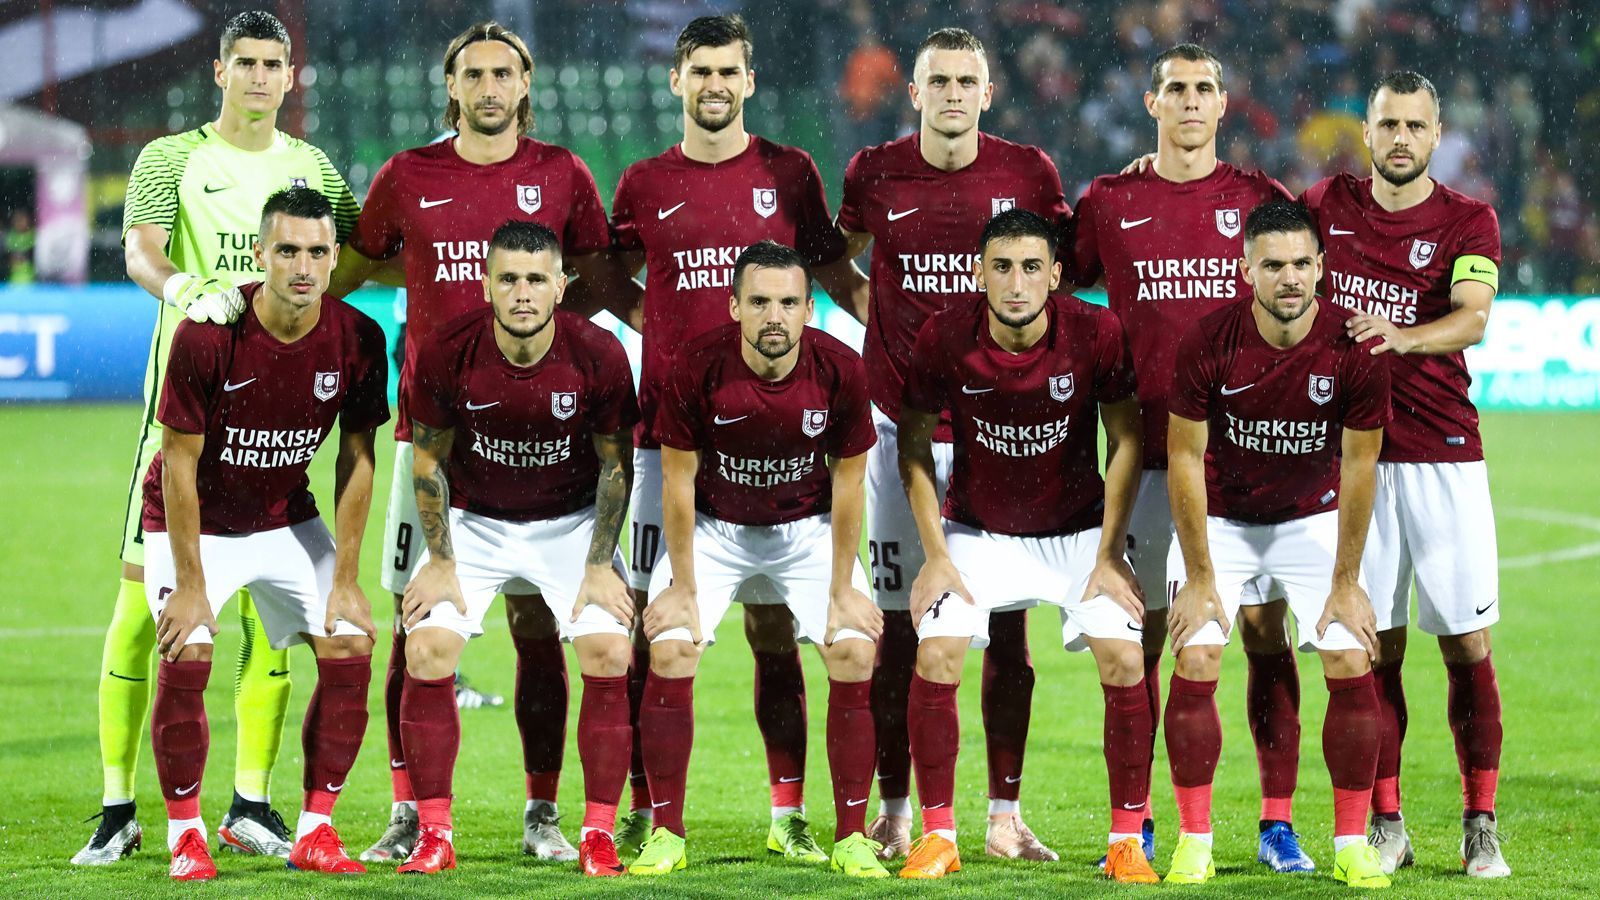 
                <strong>Bosnien-Herzegowina: FK Sarajevo</strong><br>
                In Bosnien-Herzegowina wurde die Saison in der Premier League aufgrund der Coronavirus-Pandemie abgebrochen. Der FK Sarajevo wurde zum Titelträger erklärt und ist damit zum fünften Mal Meister.
              